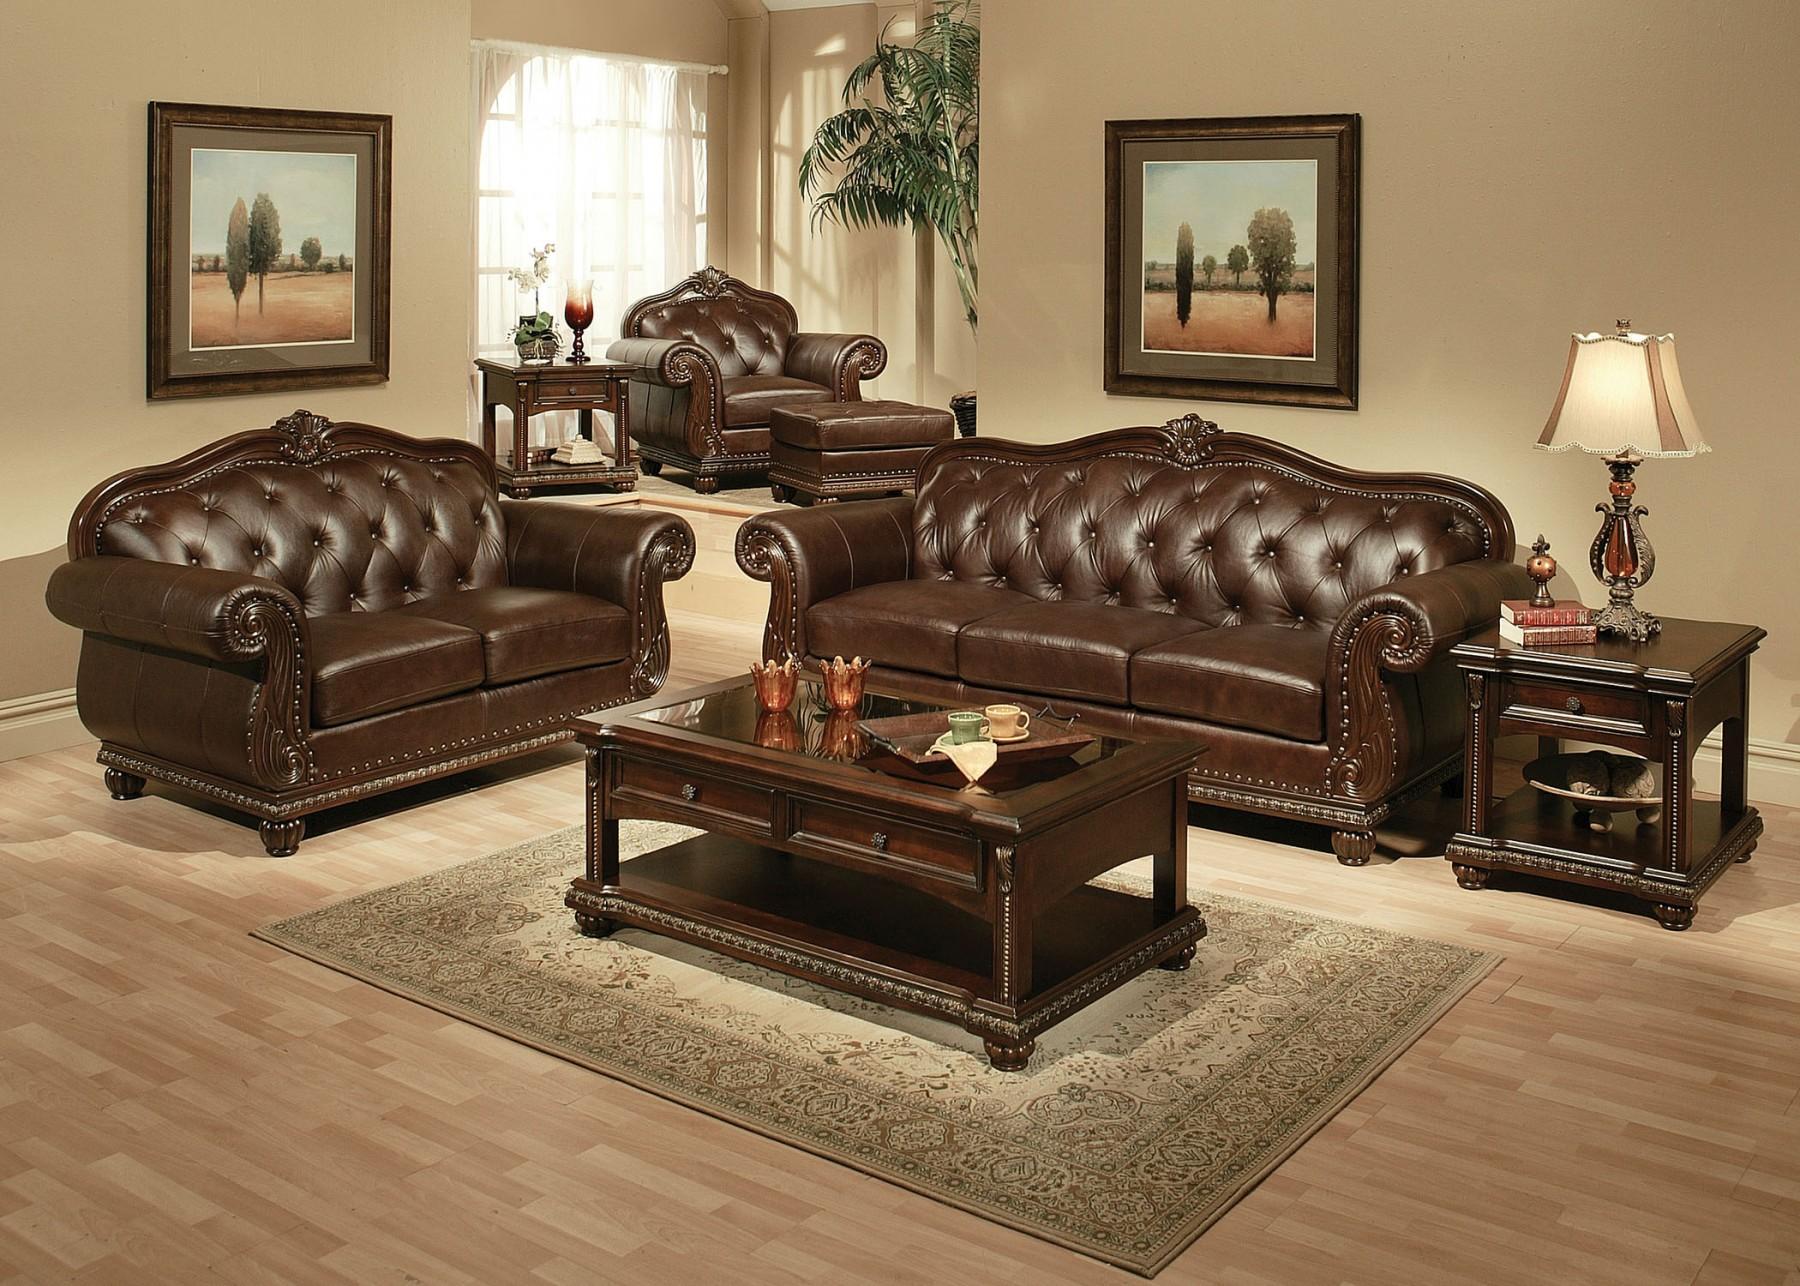 

    
Acme Furniture Anondale 15030 Sofa Cherry/Espresso 15030 Anondale
